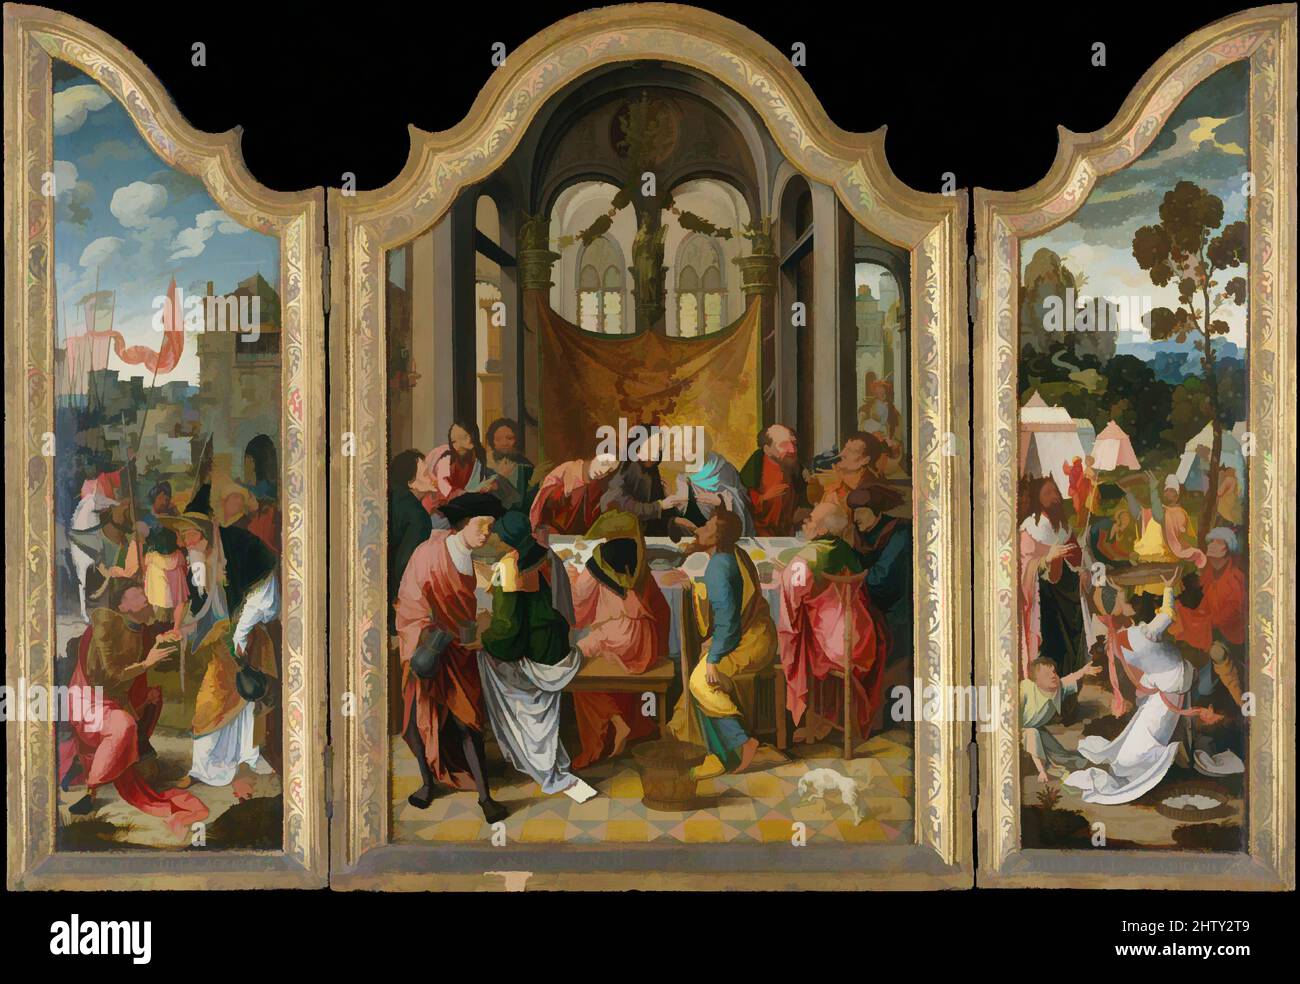 Art inspiré par la dernière Cène, 1515–20, huile sur bois, combinaison, avec partie supérieure en forme et cadre engagé : panneau central 47 x 33 3/4 po. (119,4 x 85,7 cm); aile gauche 47 x 16 7/8 po (119,4 x 42,9 cm); aile droite 47 1/8 x 17 po (119,7 x 43,2 cm), peintures, Netherlandish (Anvers Mannerist, oeuvres classiques modernisées par Artotop avec une touche de modernité. Formes, couleur et valeur, impact visuel accrocheur sur l'art émotions par la liberté d'œuvres d'art d'une manière contemporaine. Un message intemporel qui cherche une nouvelle direction créative. Artistes qui se tournent vers le support numérique et créent le NFT Artotop Banque D'Images